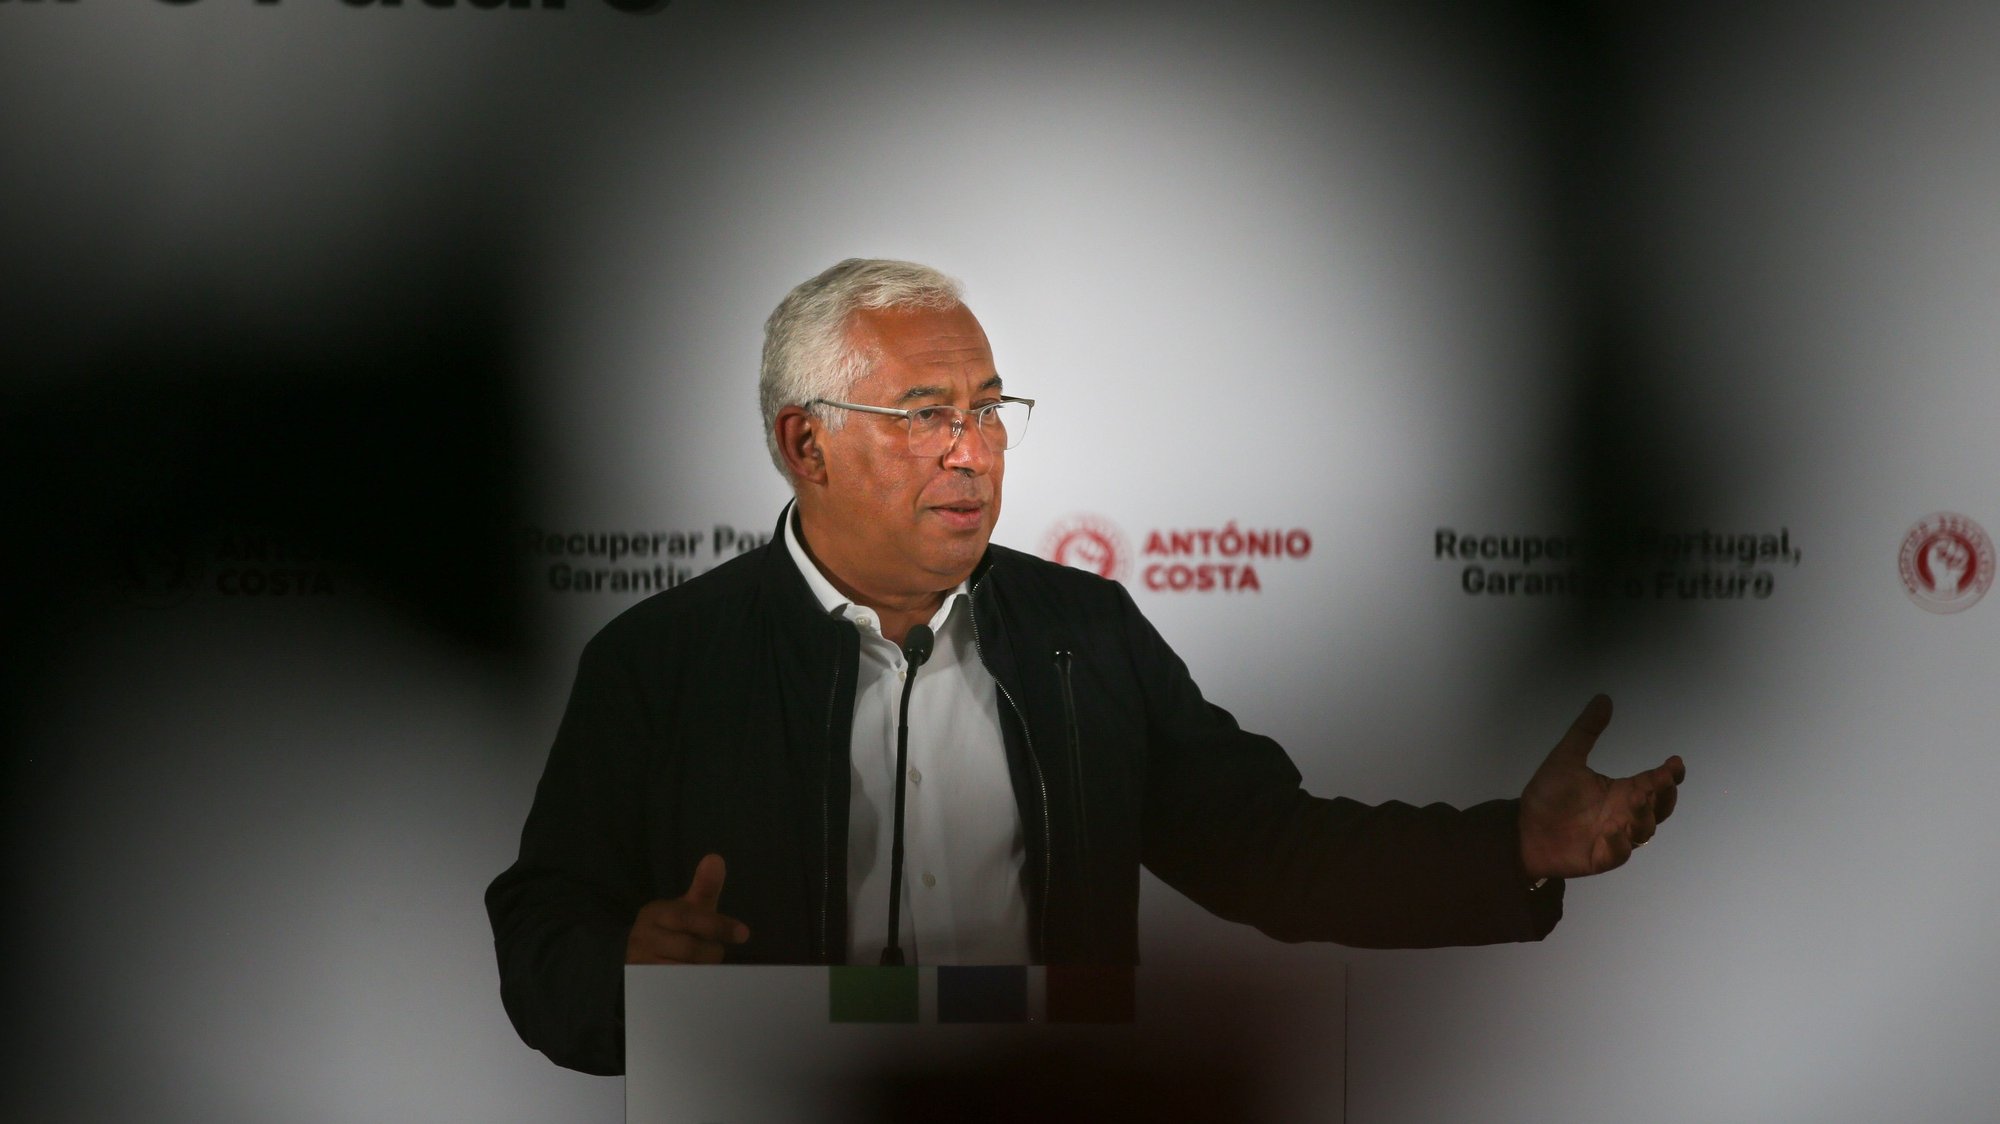 António Costa discursa na apresentação da moção da candidatura a secretário-geral do Partido Socialista (PS) “Recuperar Portugal - Garantir o Futuro” na Figueira da Foz, 29 de maio de 2021. PAULO CUNHA /LUSA